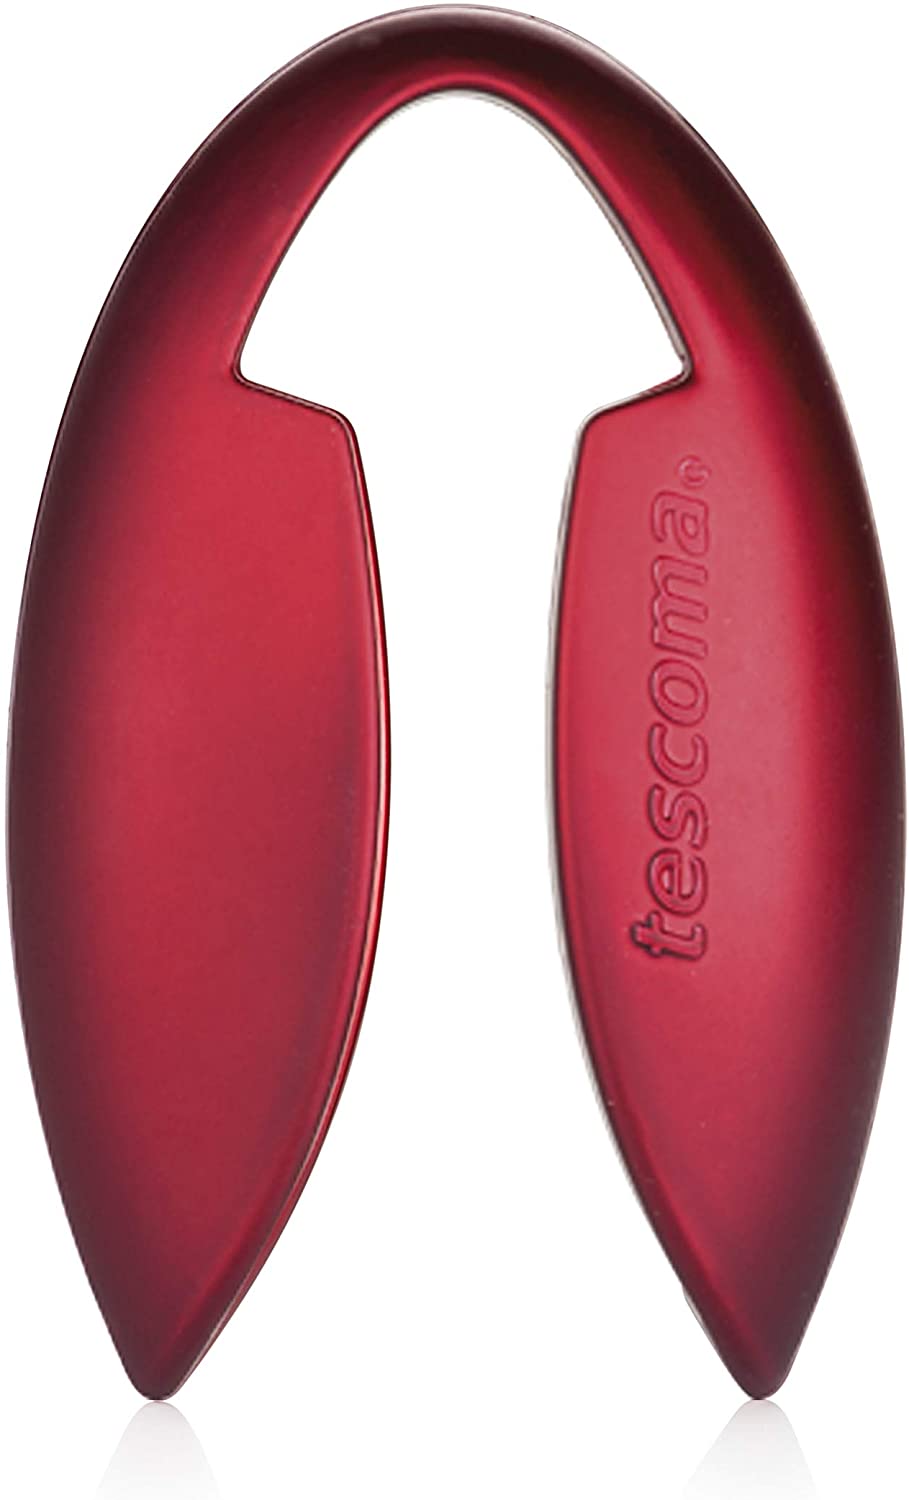 Tescoma 695420 Capsule Cutter Red 16 x 8.5 x 1.8 cm